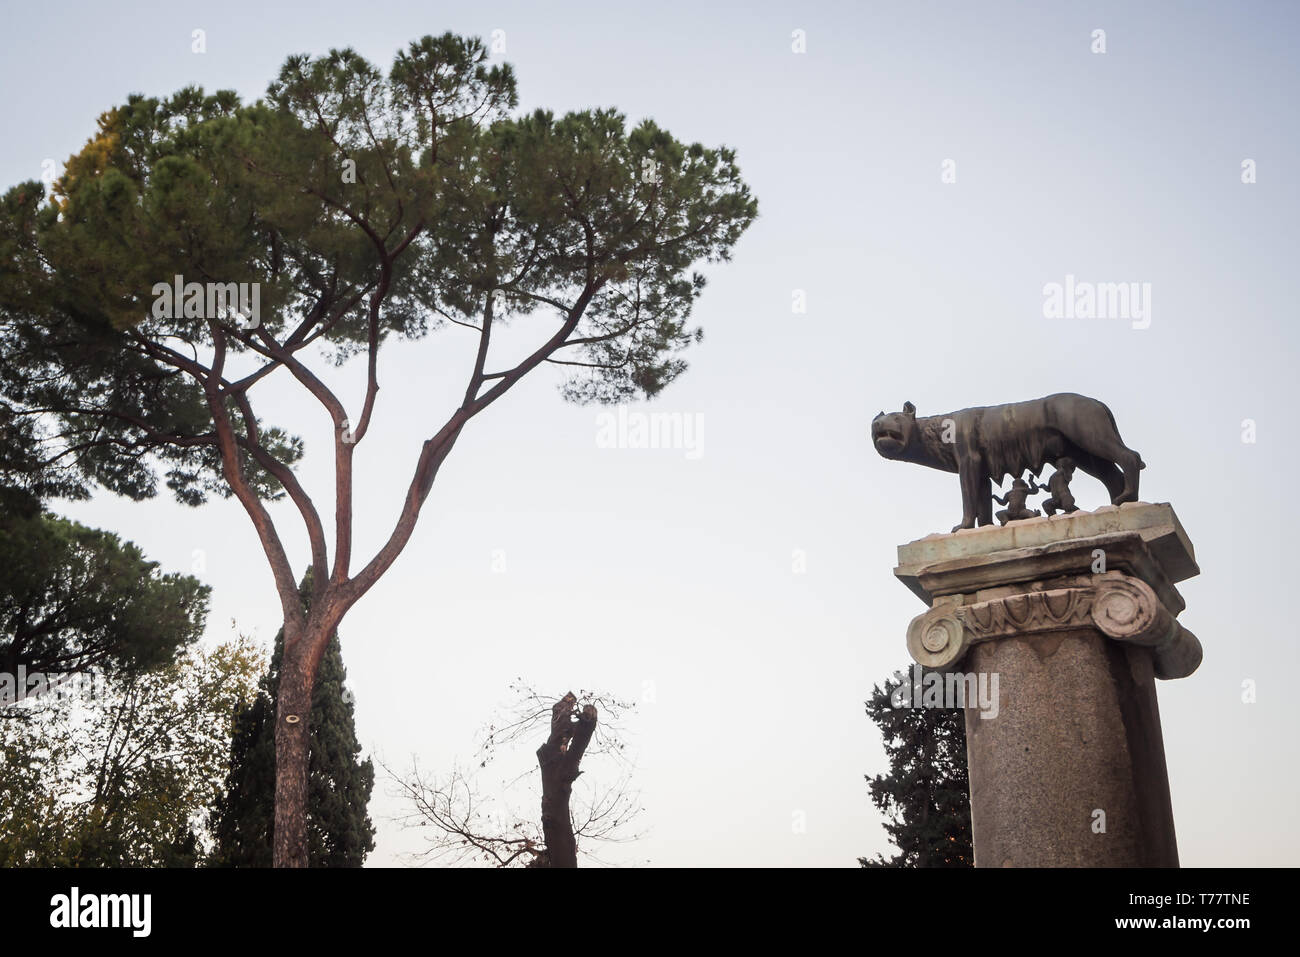 Statue de la légende de Romulus et Remus alimenté par le loup à Rome Italie Banque D'Images